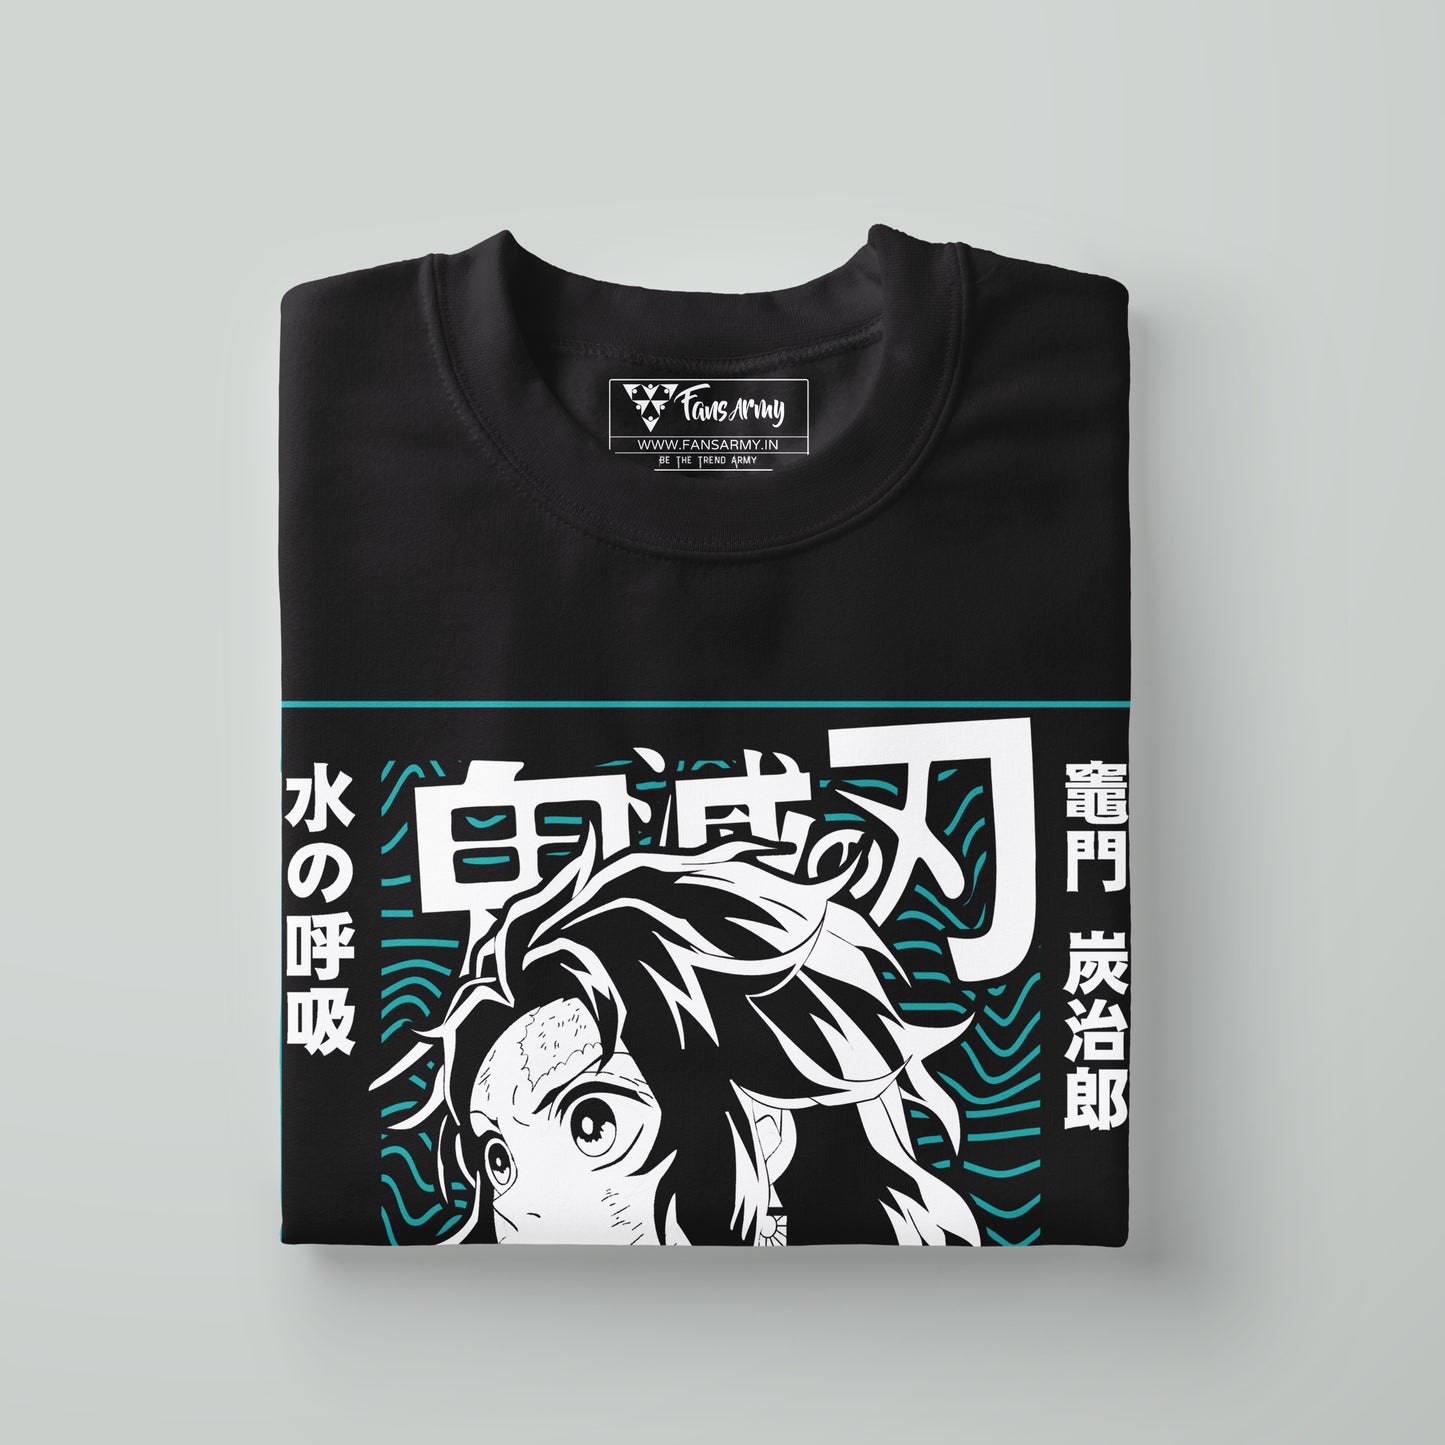 Tanjiro Water Breathing Slayer T-shirt